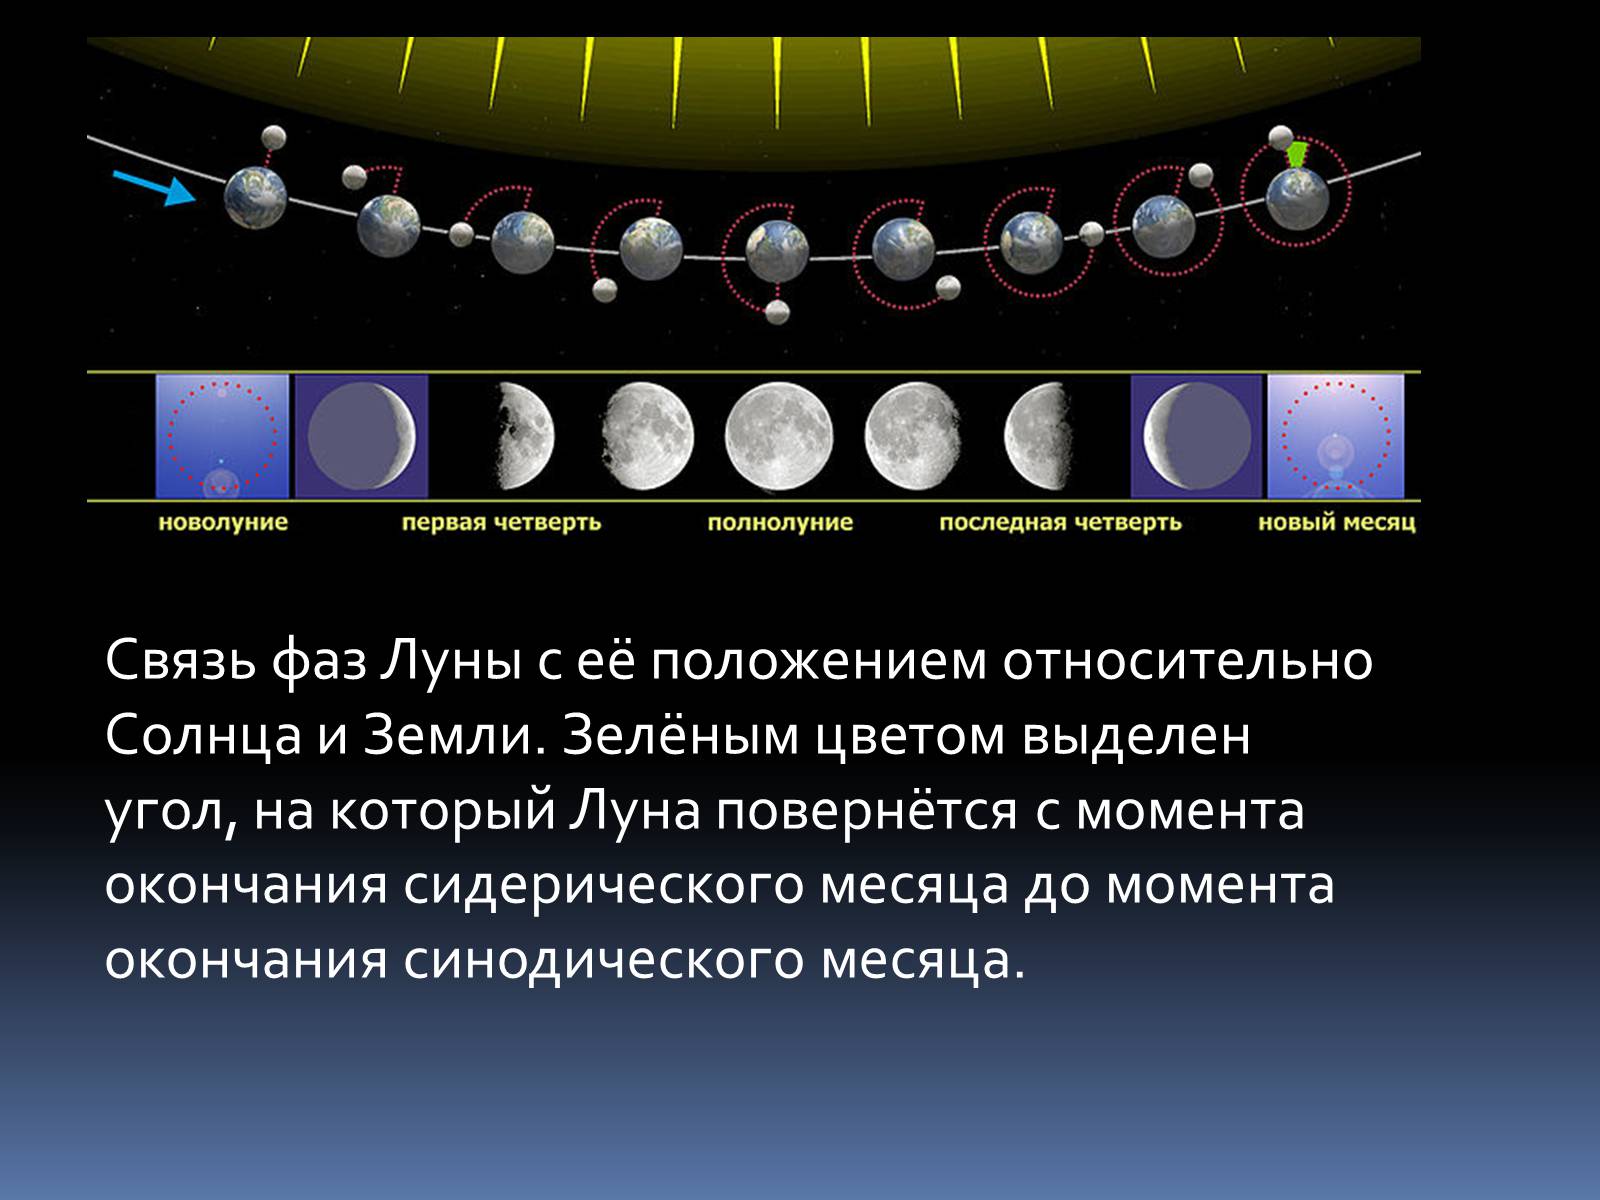 Положение Луны относительно земли